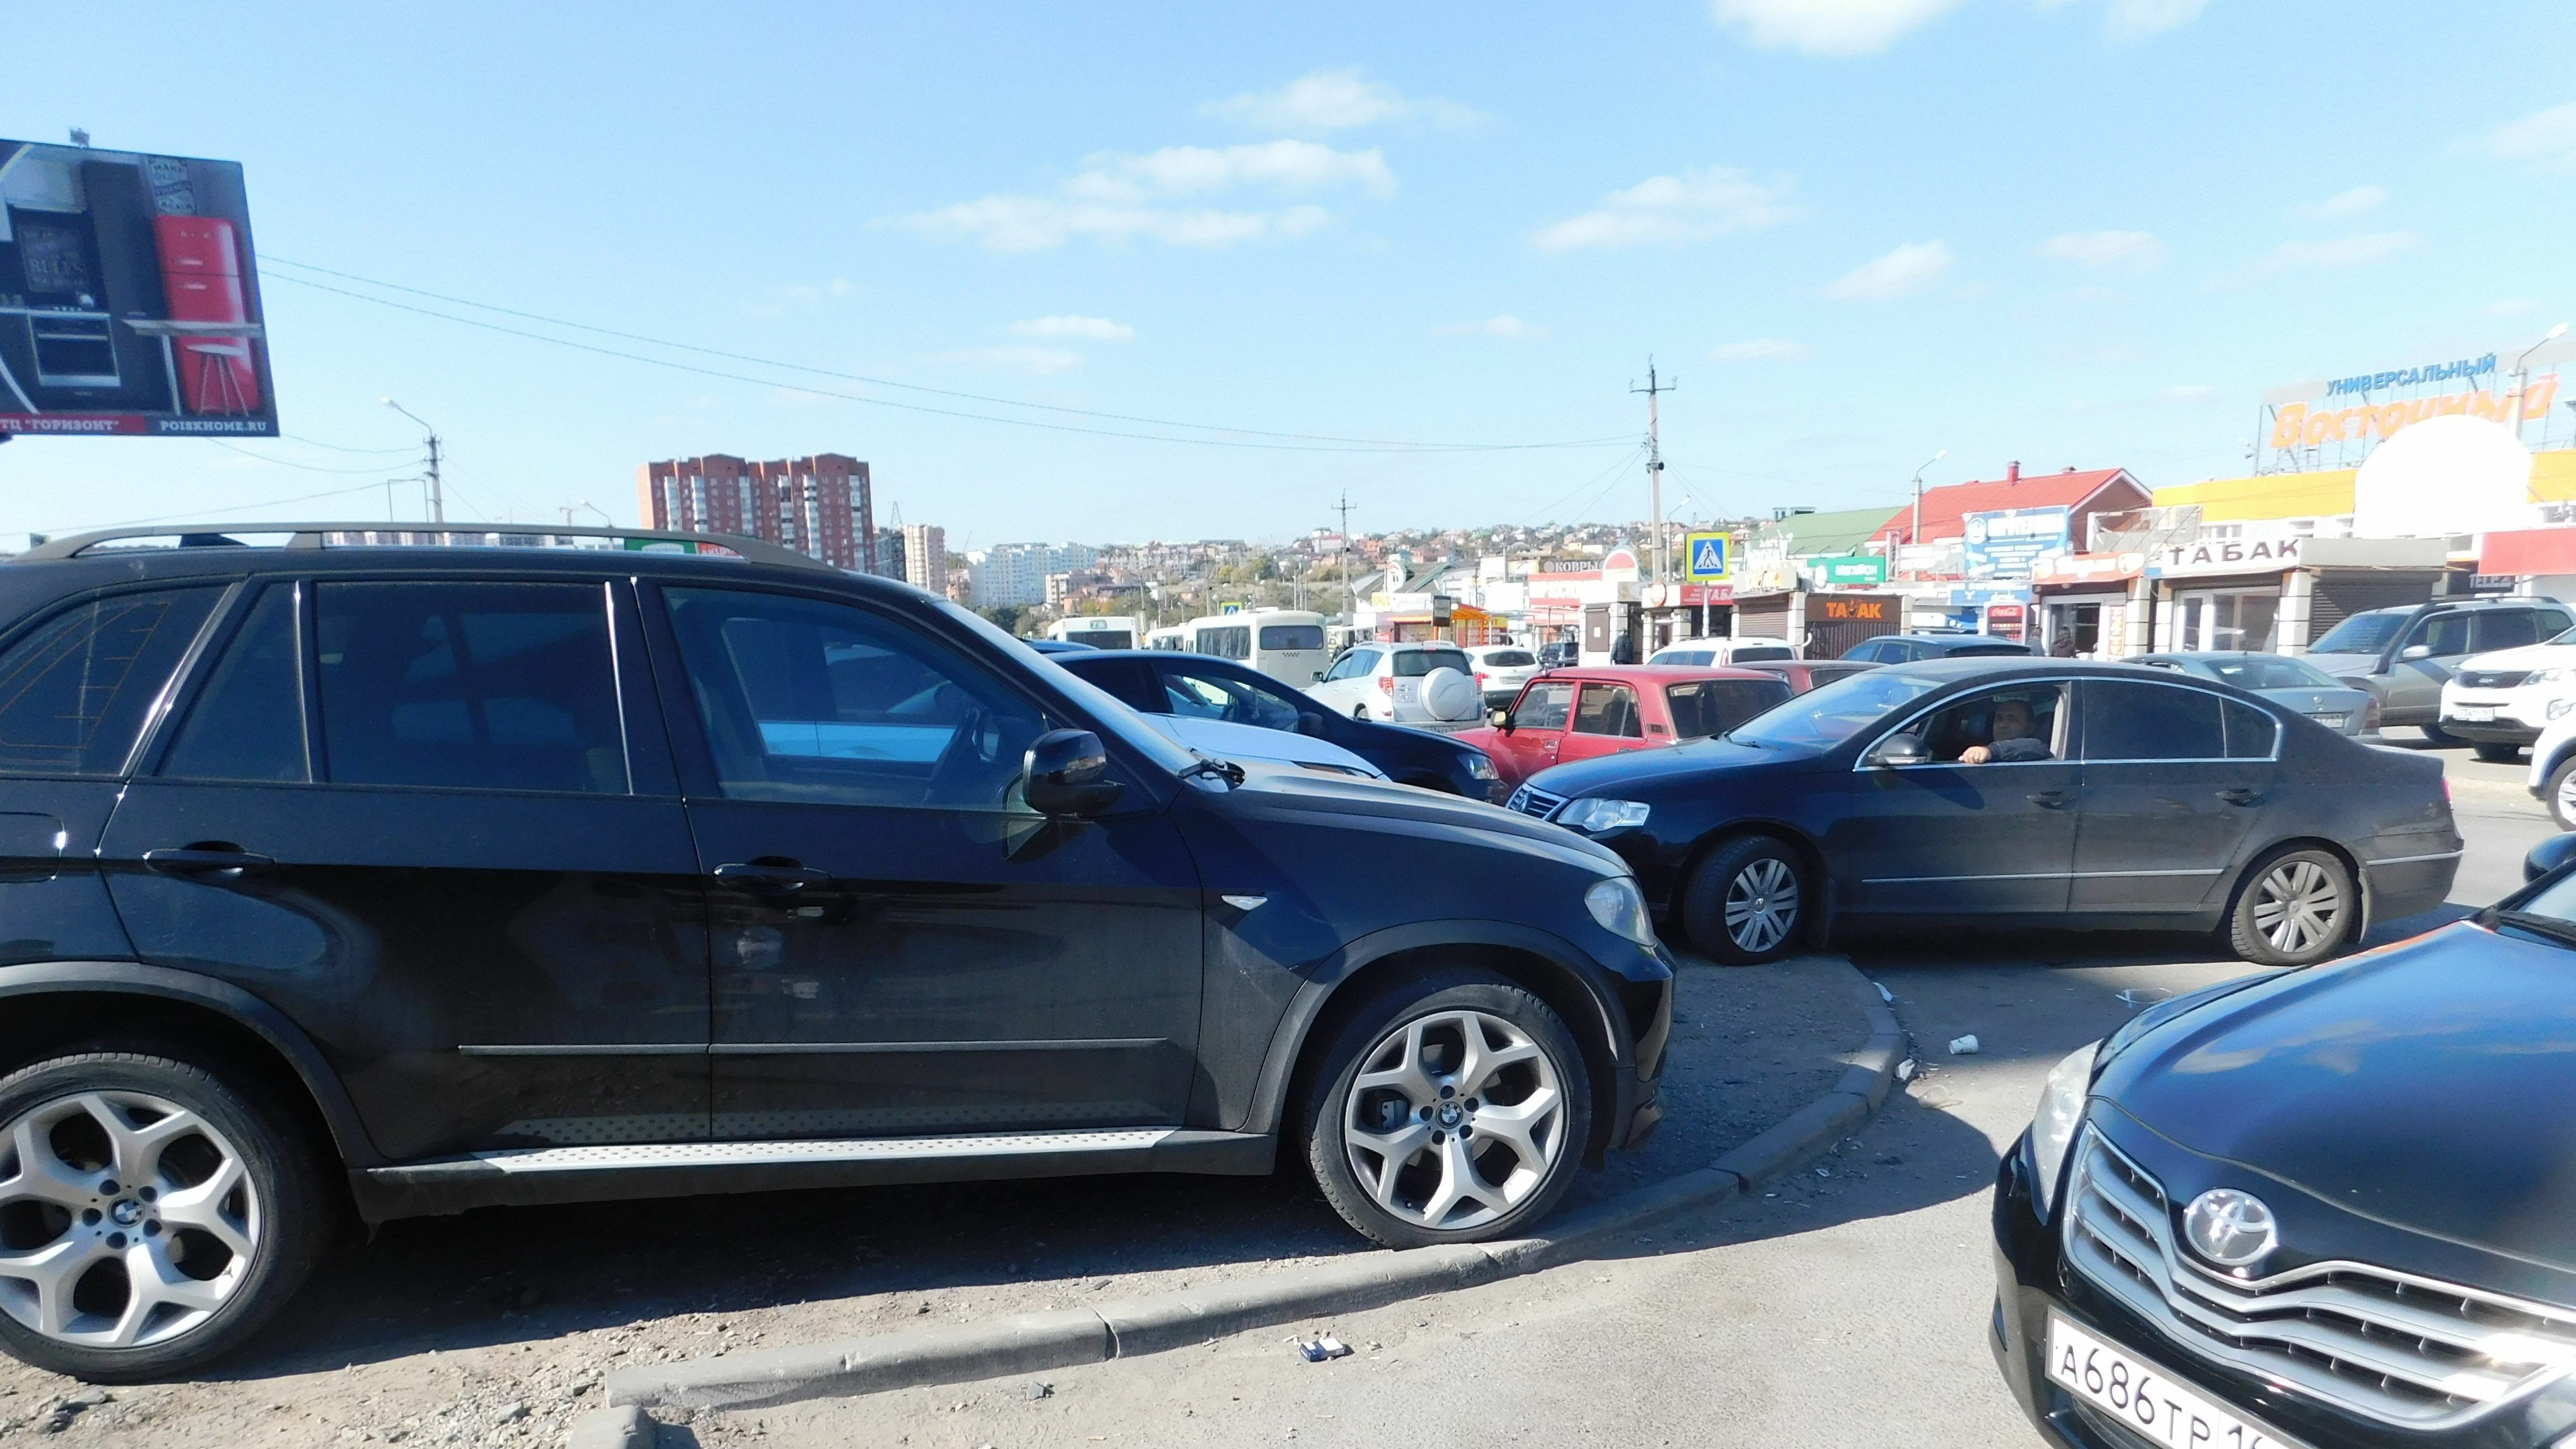 Пятилетнюю девочку сбила машина в Хабаровске